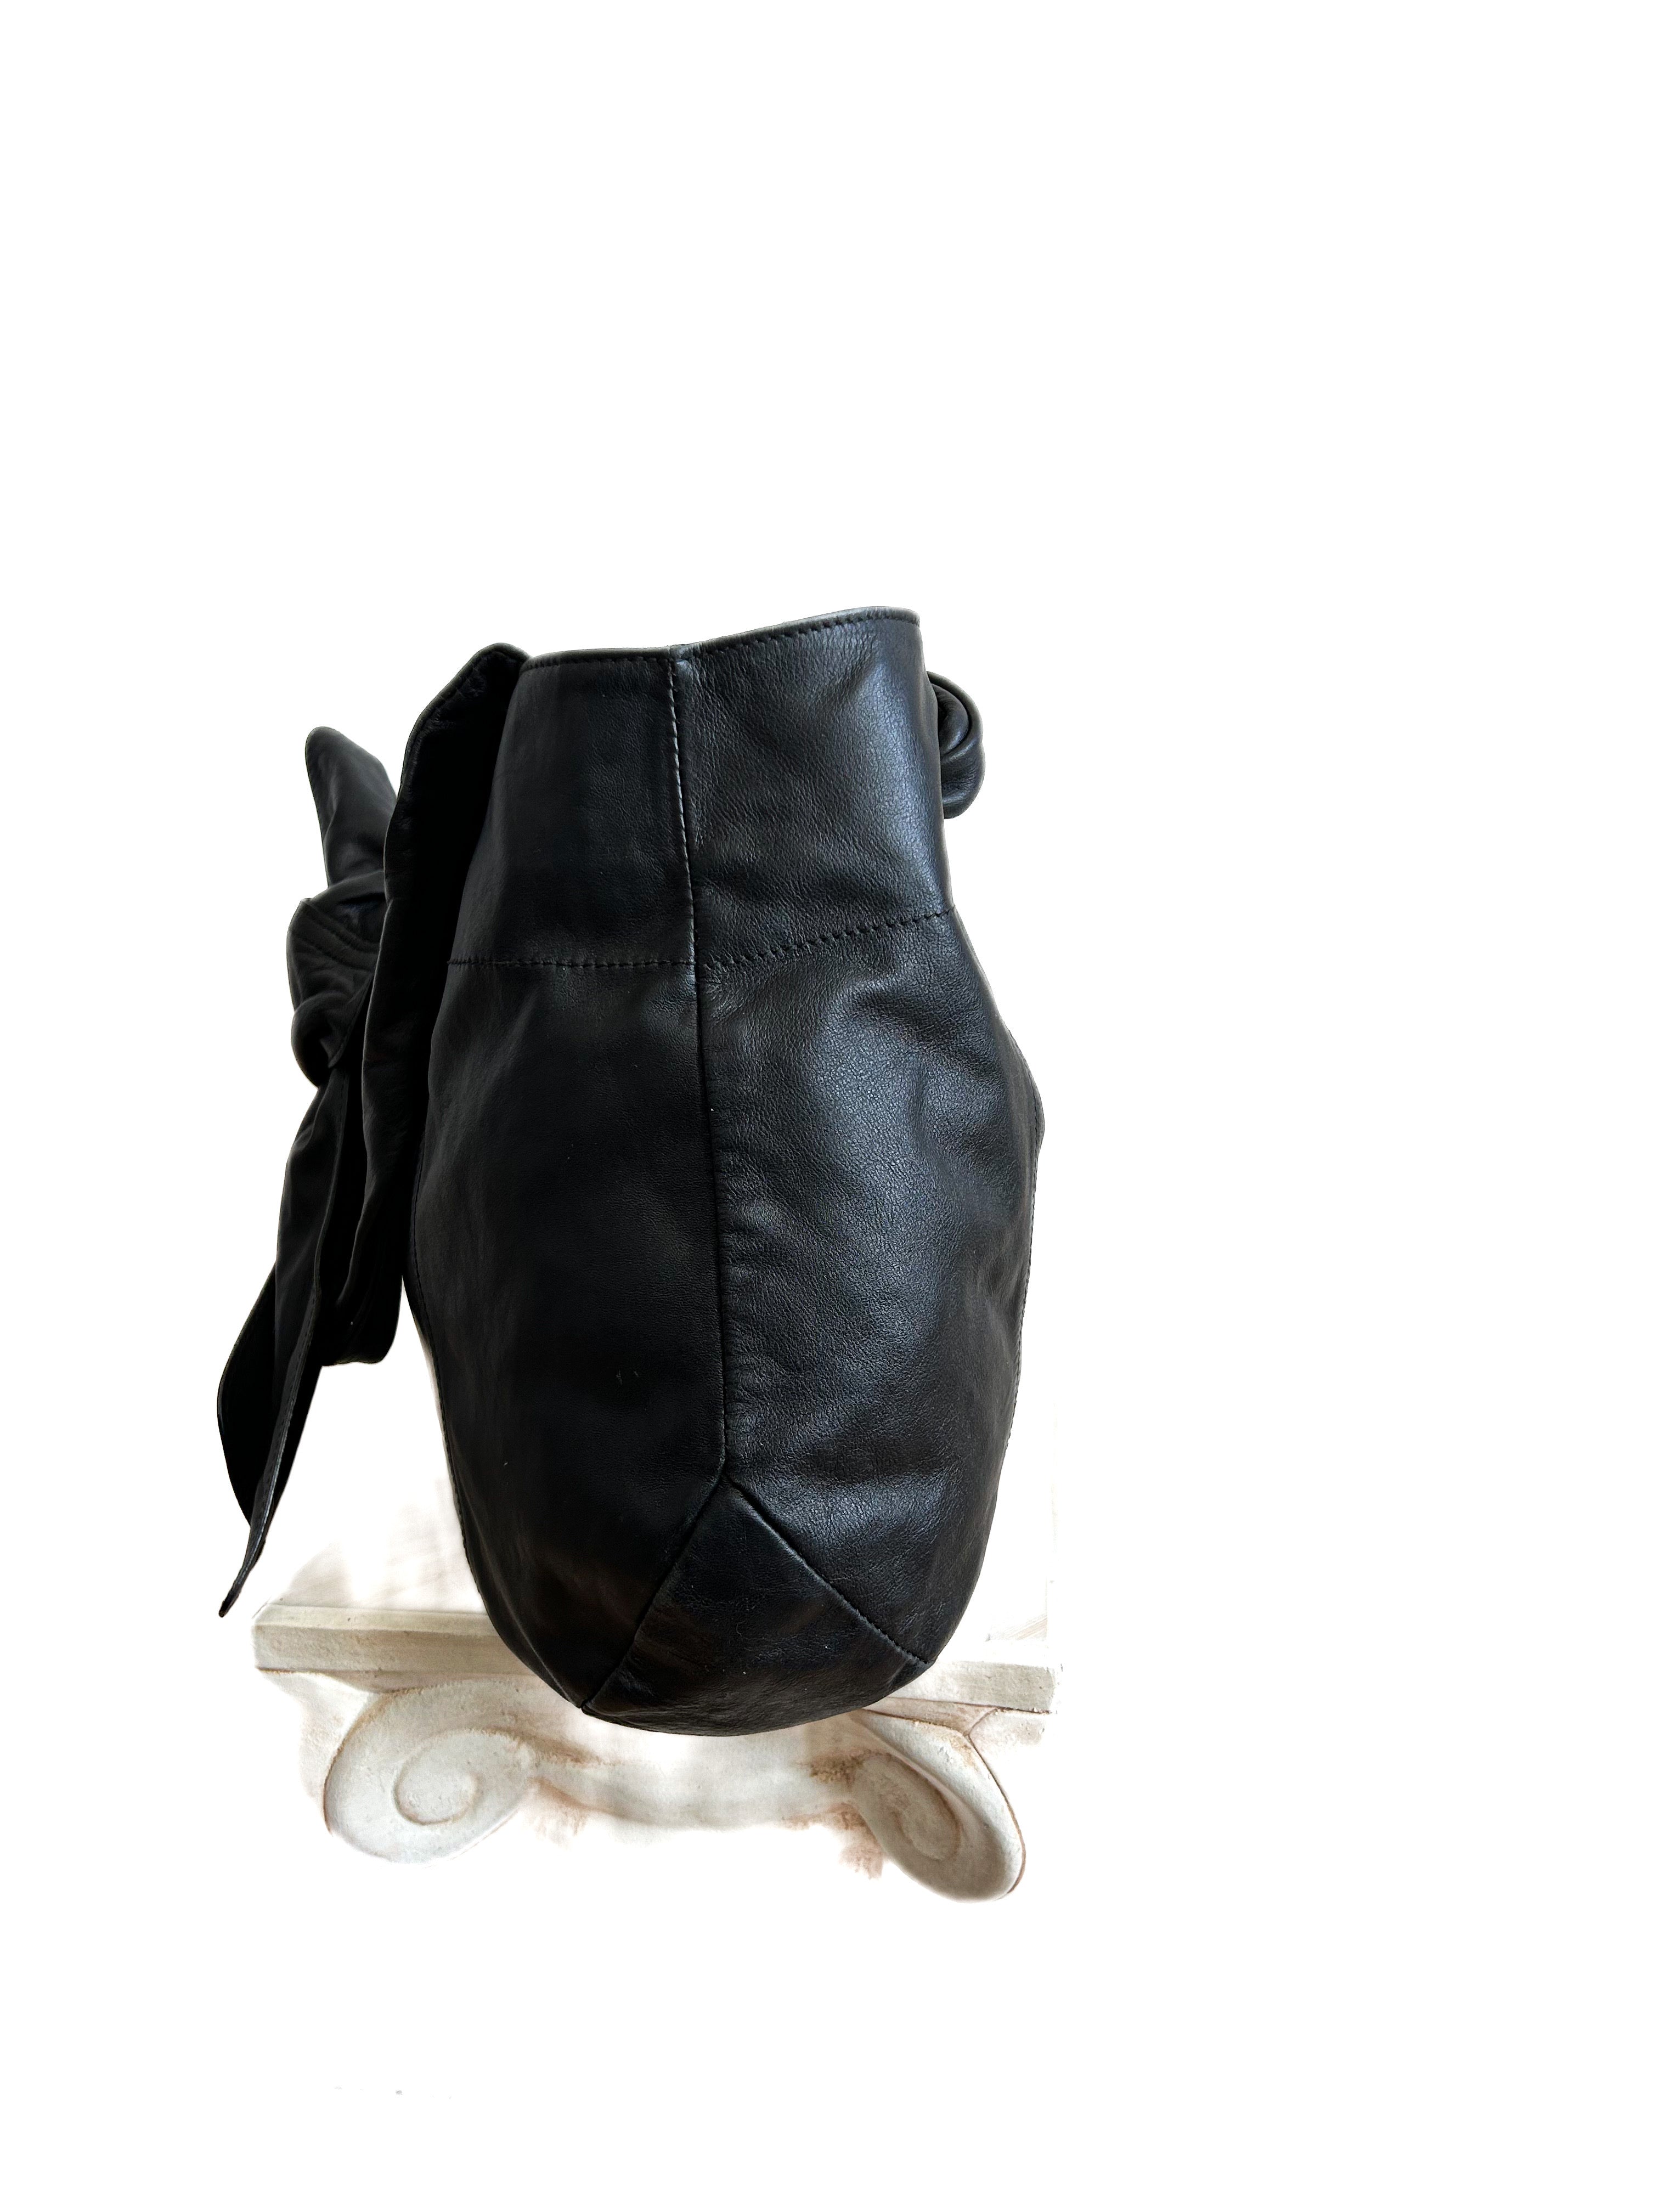 Furla Black Leather Shoulder Bag, Made in Italy